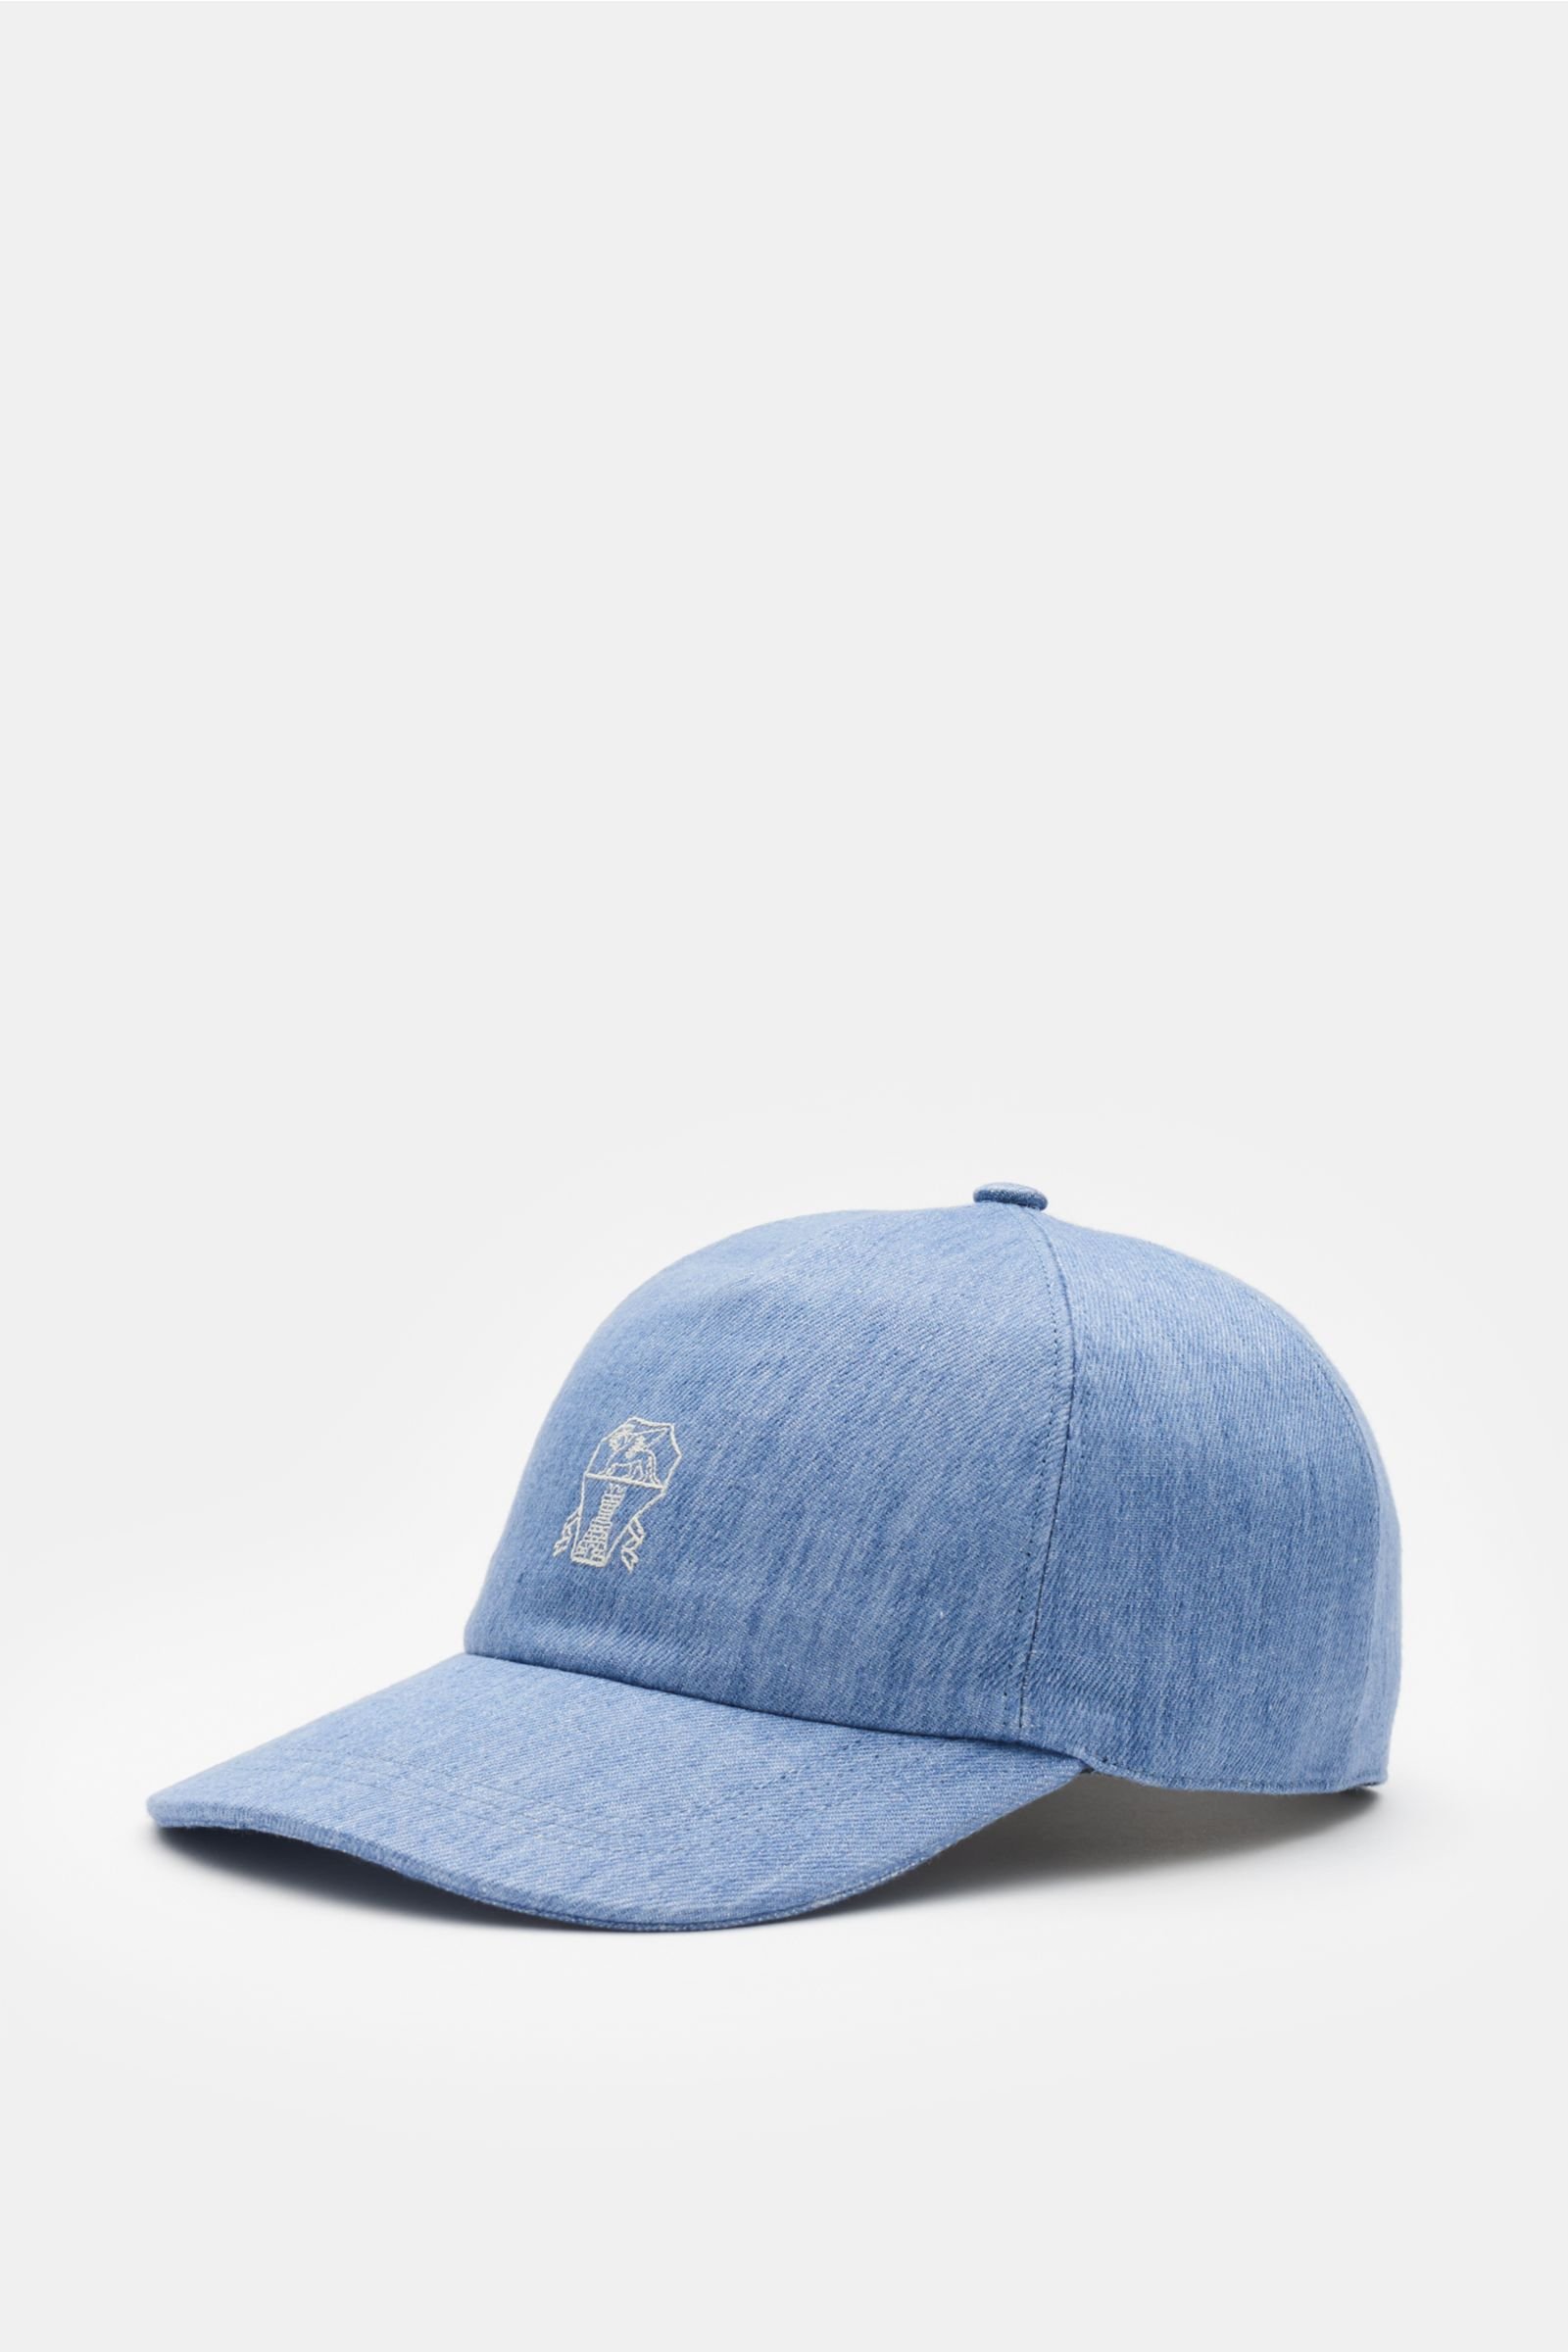 Linen baseball cap grey-blue